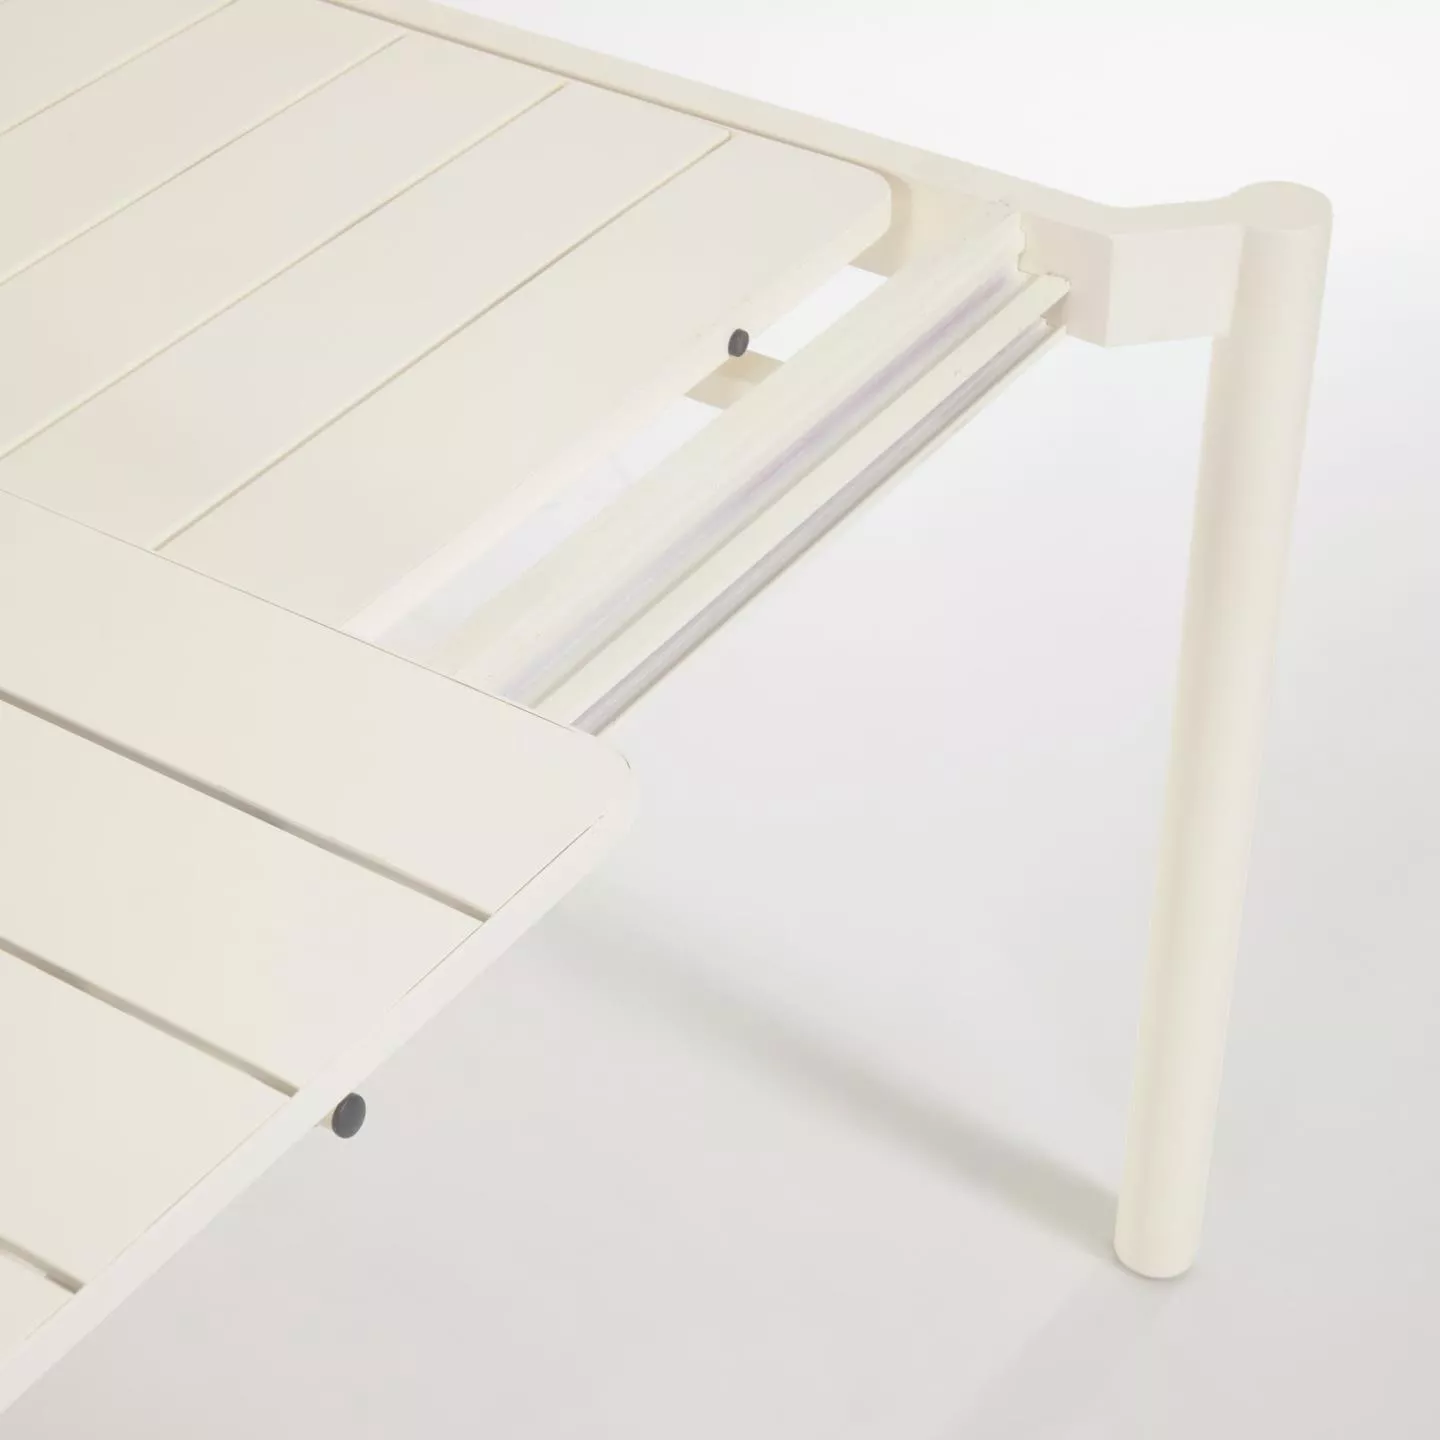 Раздвижной стол La Forma Zaltana белый 180 x 100 см